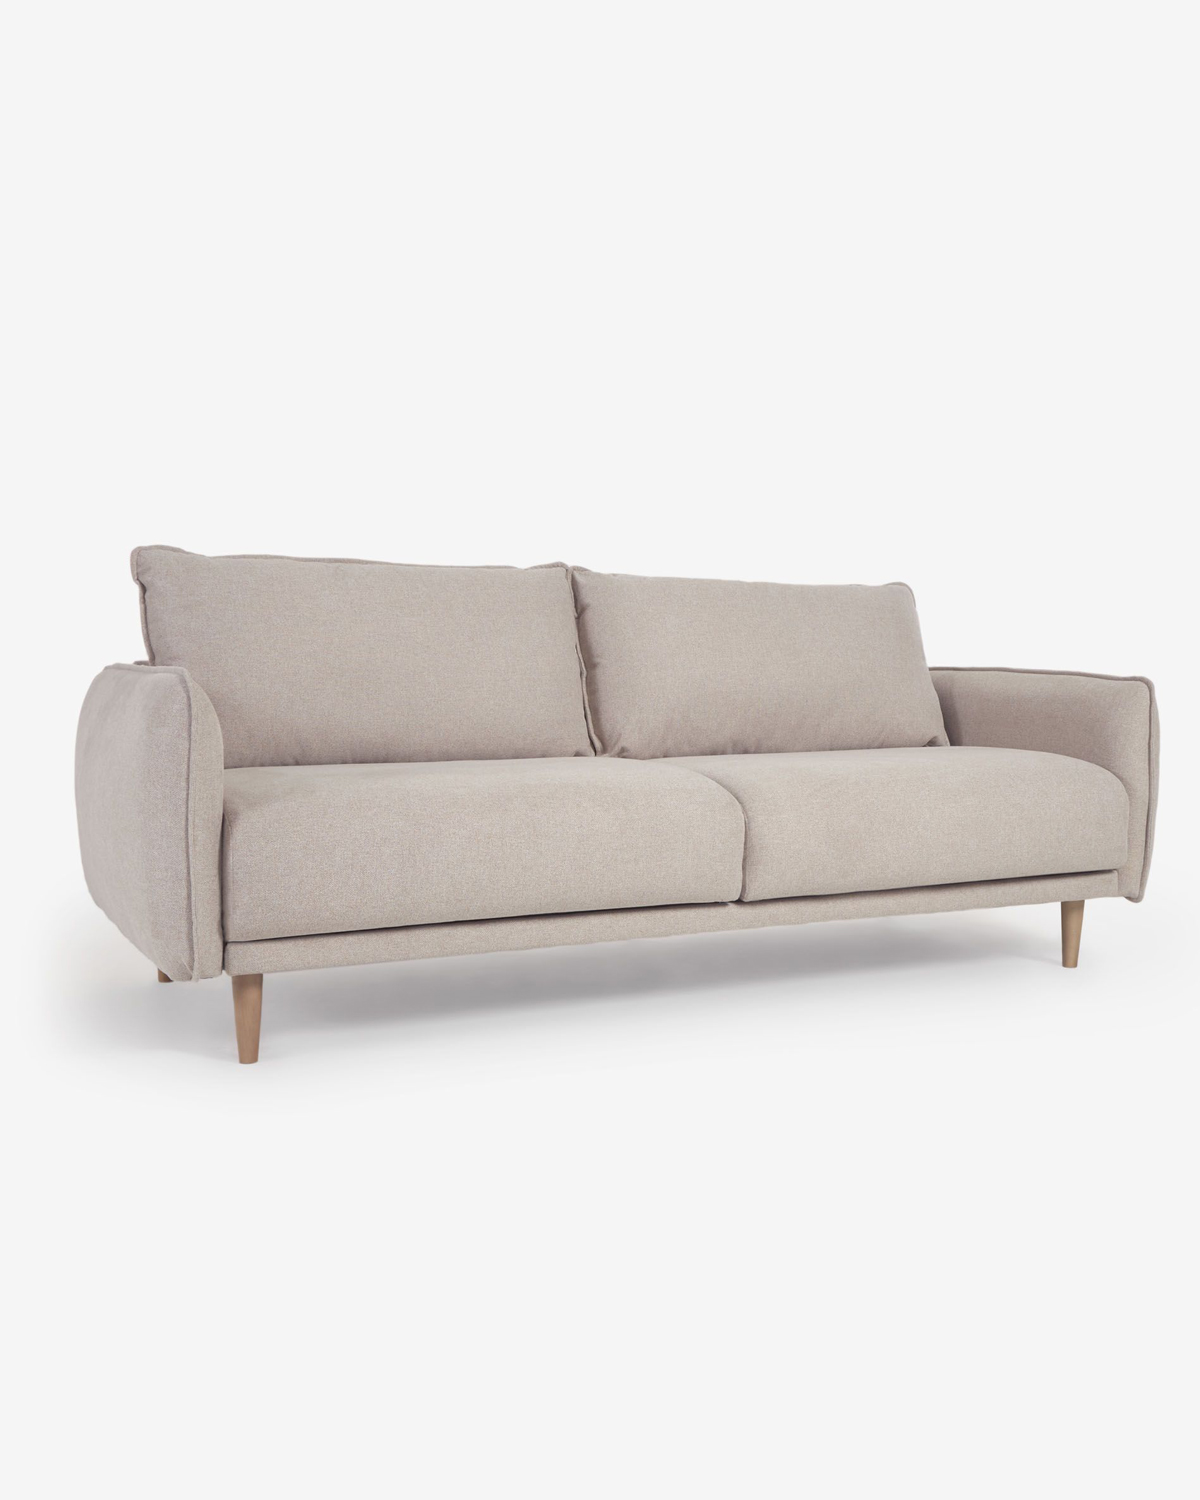 Een van de goedkope design meubels waar je elke dag van geniet, is deze goede driezitsbank met zachte kussens en rustige neutrale grijze kleur. 